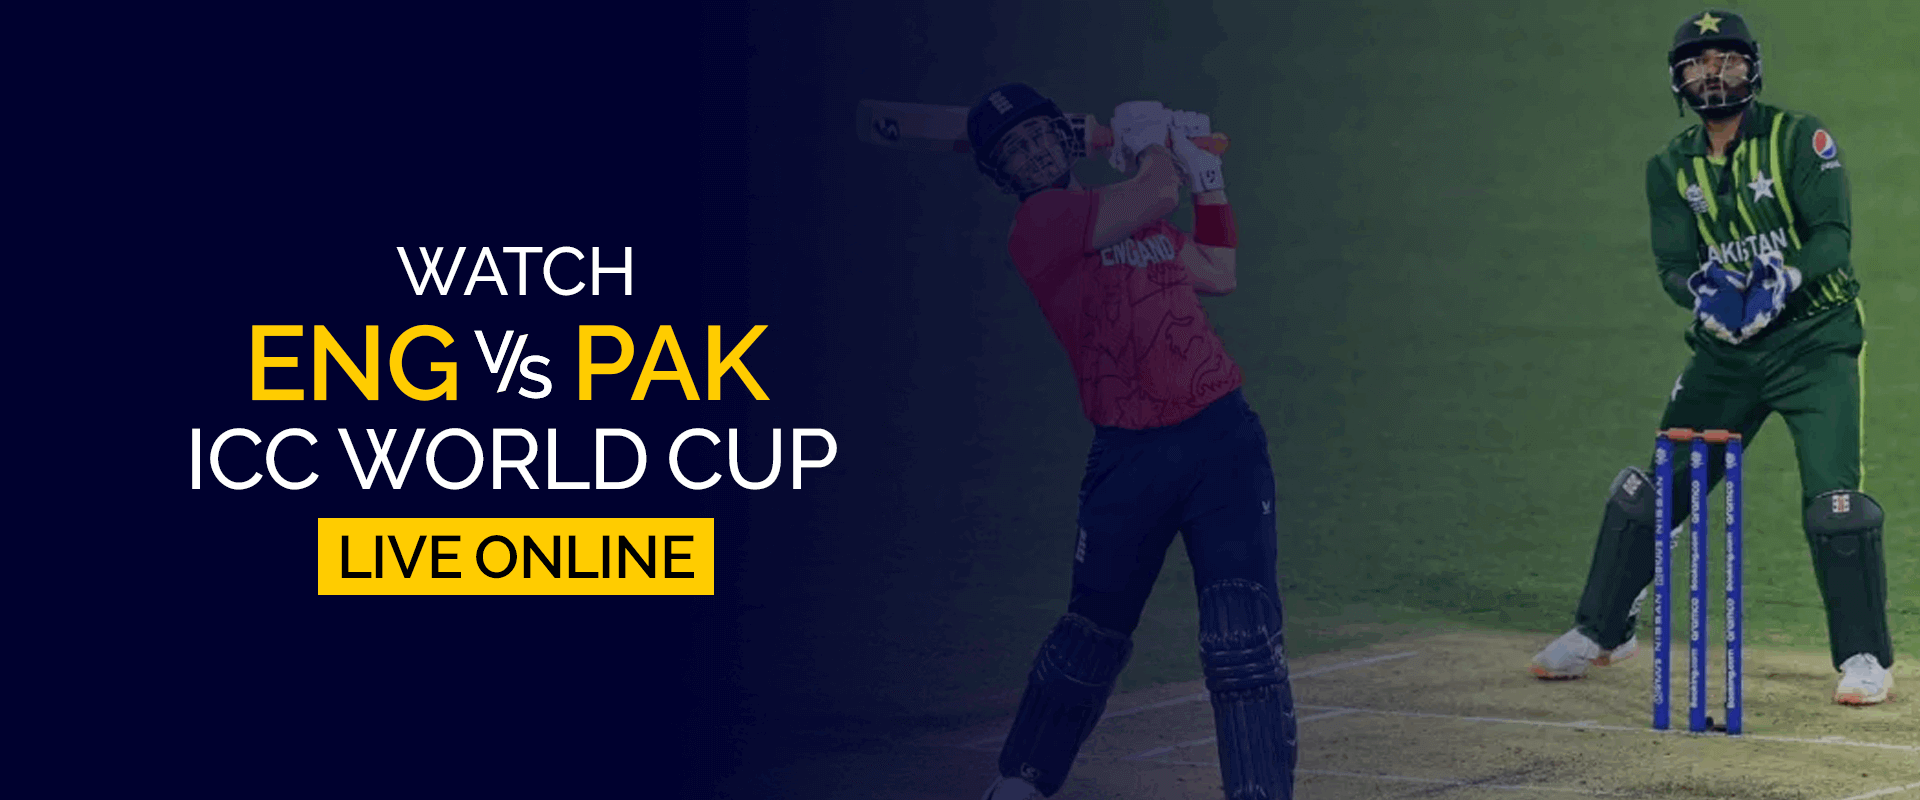 Assistir Inglaterra x Paquistão à Copa do Mundo ICC ao vivo online